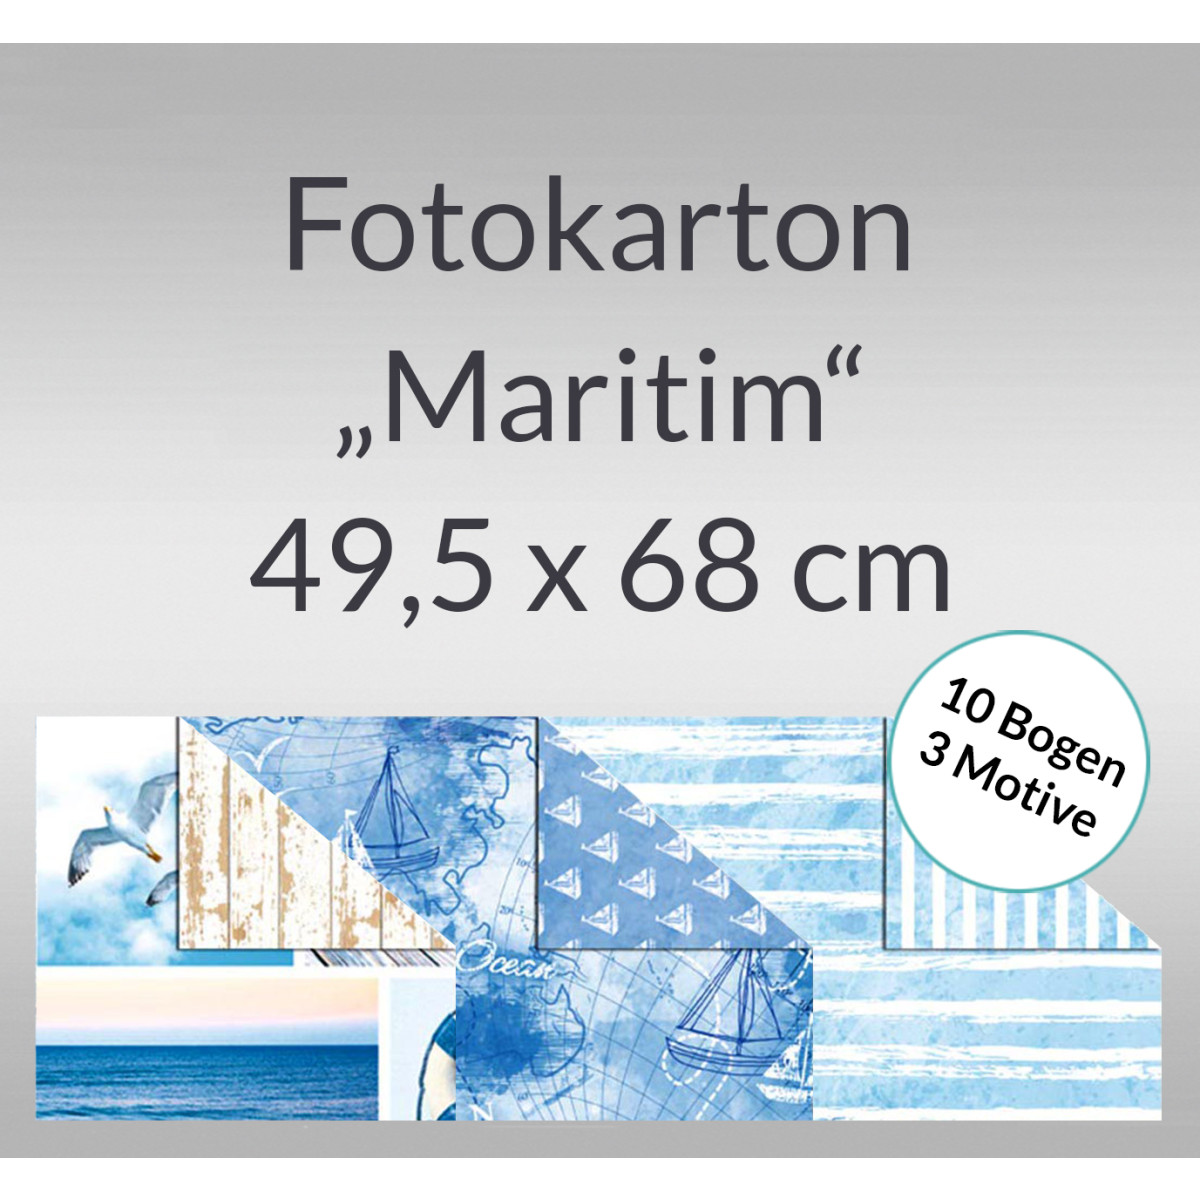 Fotokarton "Maritim" 49,5 x 68 cm - 10 Bogen sortiert